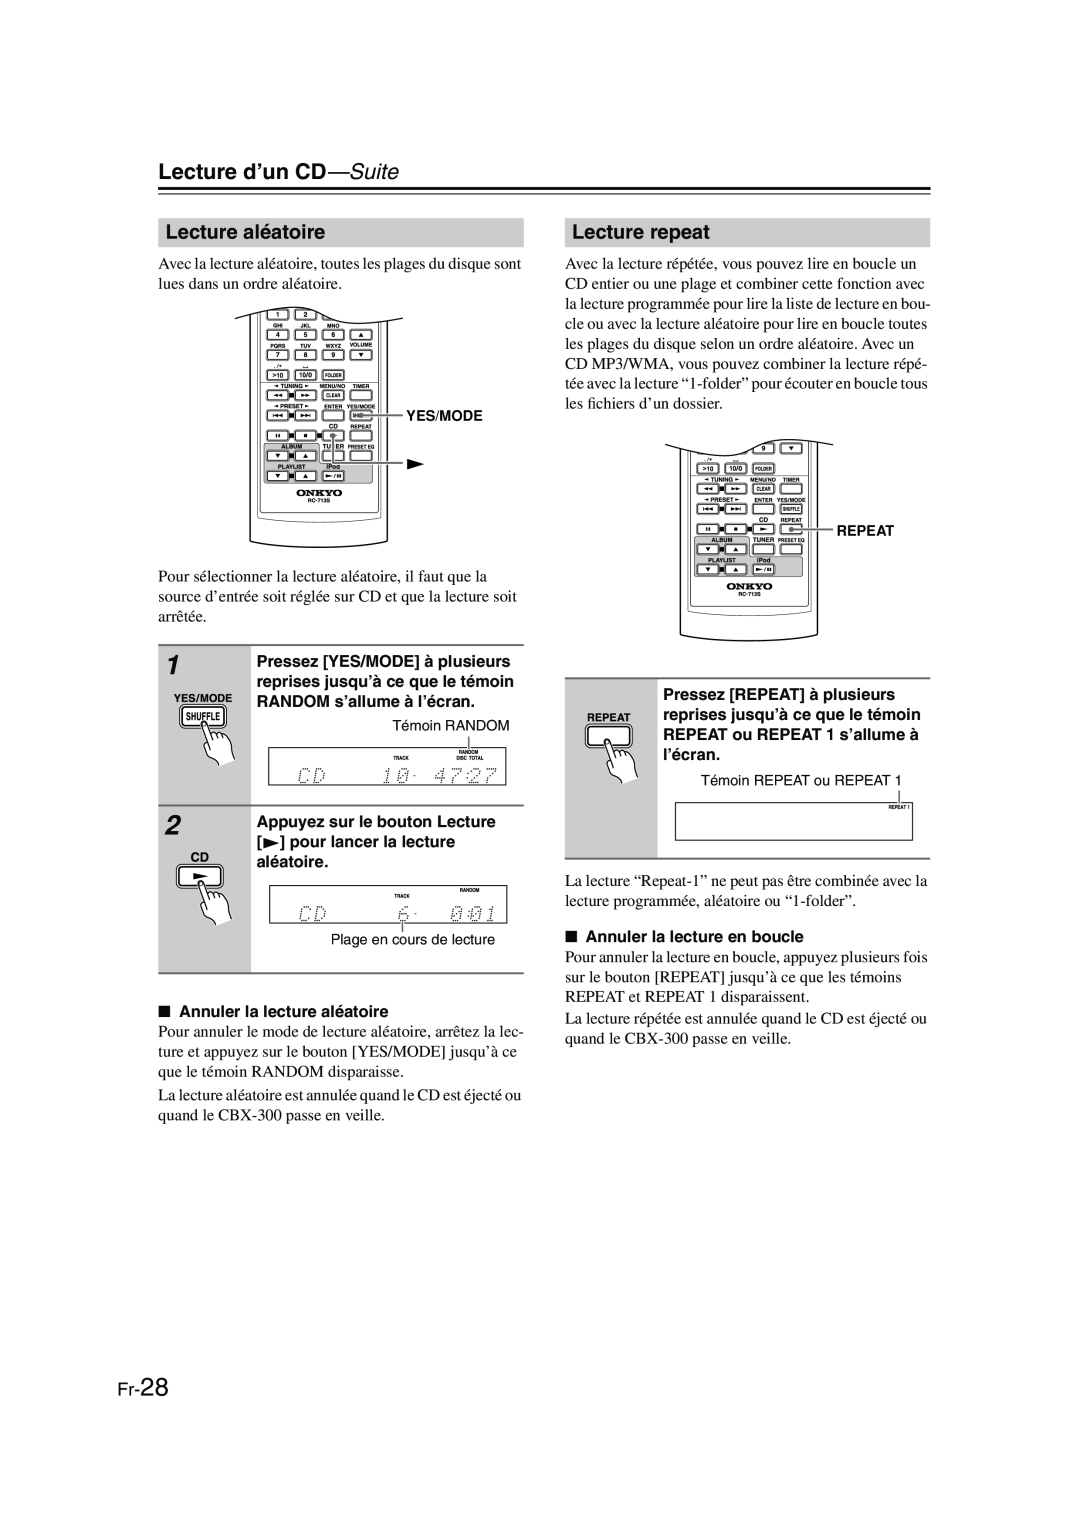 Onkyo CBX-300 instruction manual Lecture aléatoire, Lecture repeat, Fr-28, Lecture d’un CD—Suite 